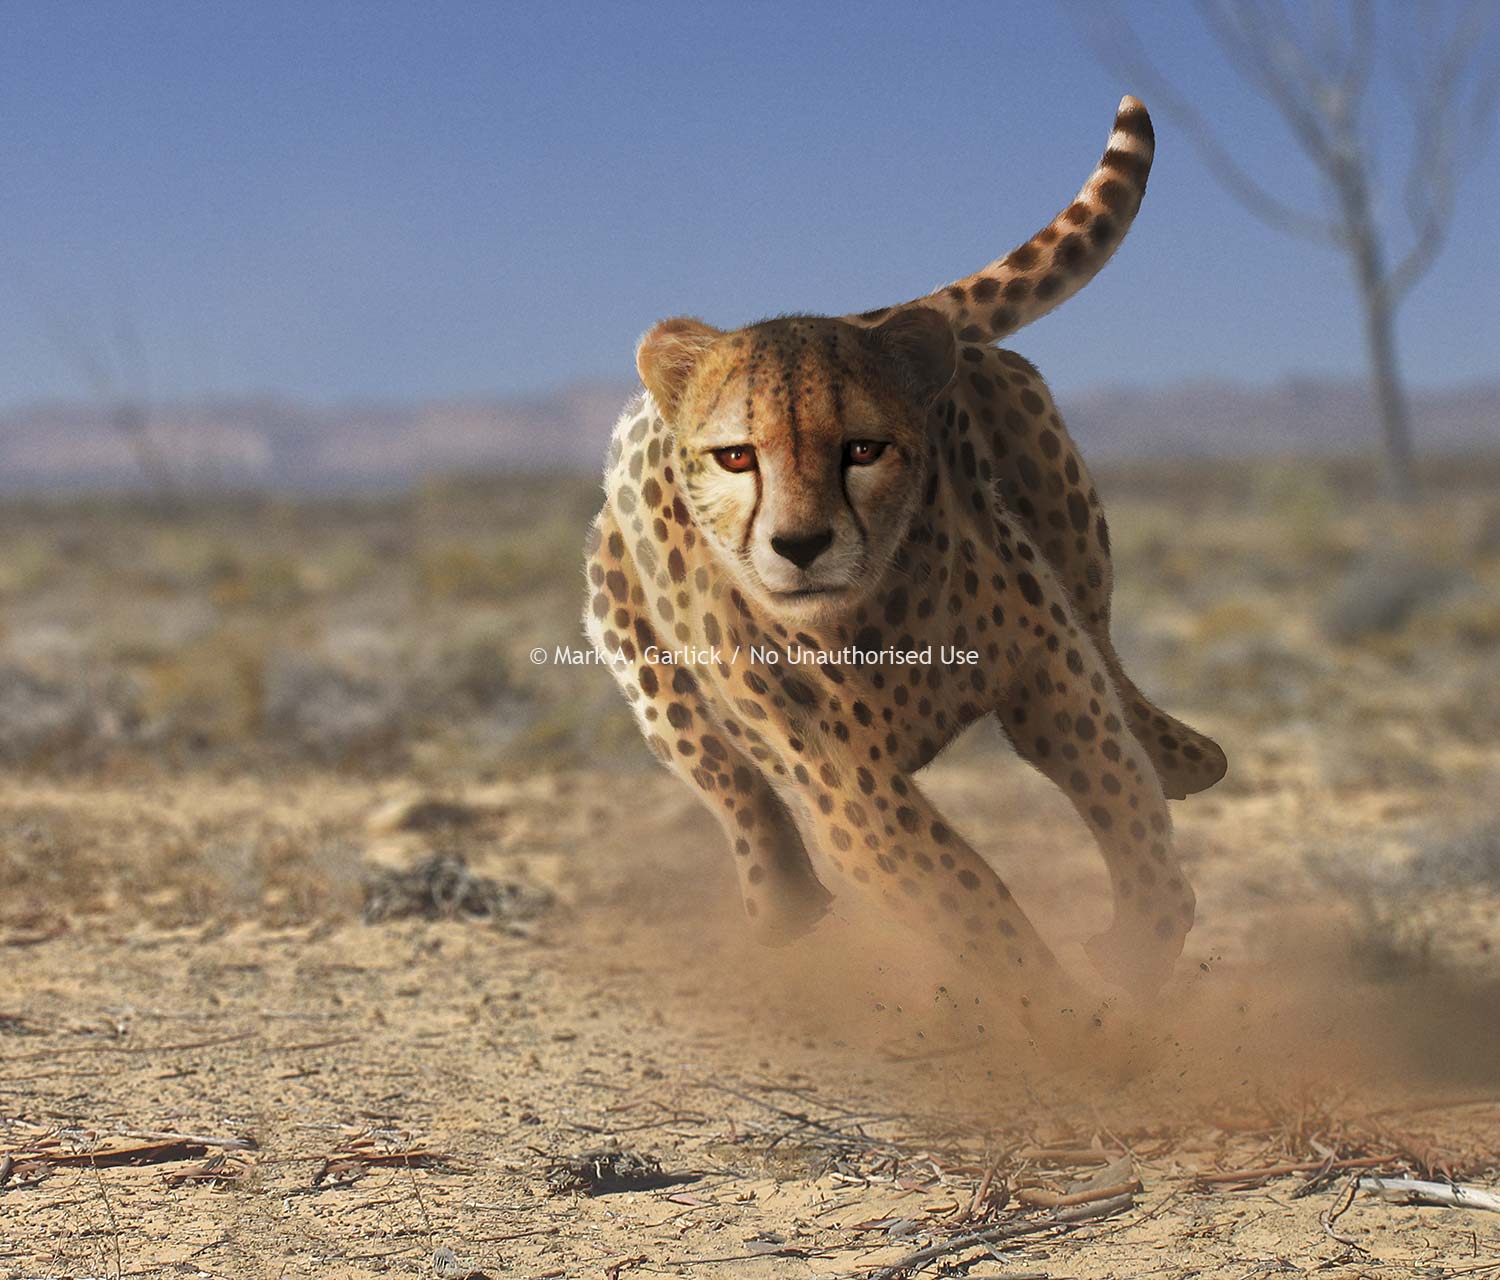 Artwork of springing cheetah by Mark A. Garlick